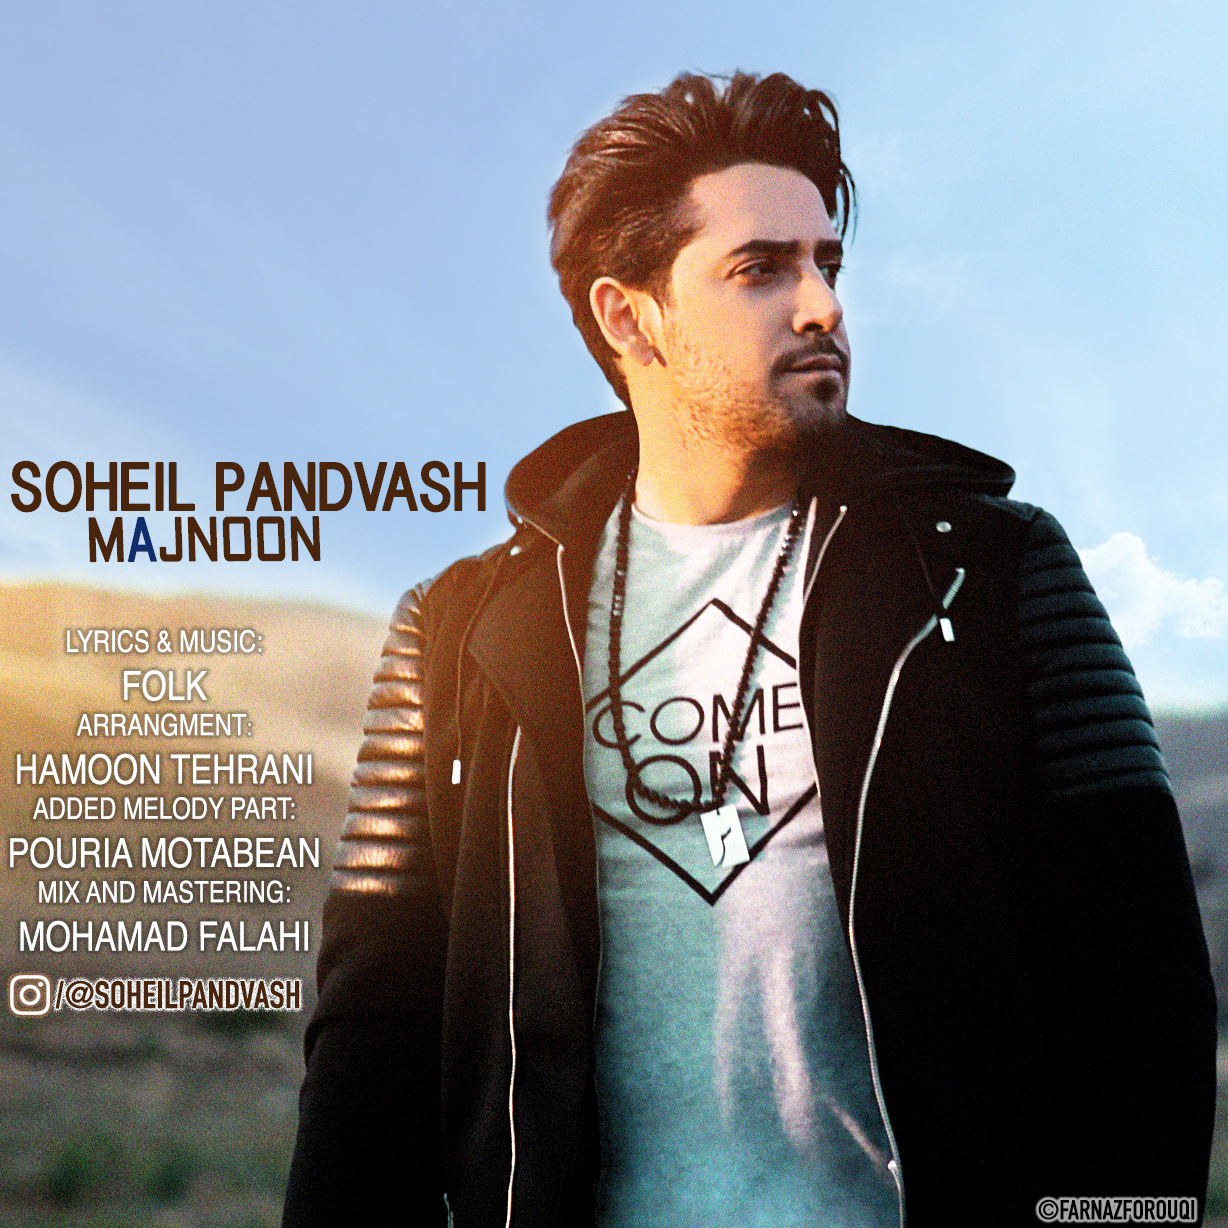  دانلود آهنگ جدید سهیل پندوش - مجنون | Download New Music By Soheil Pandvash - Majnoon